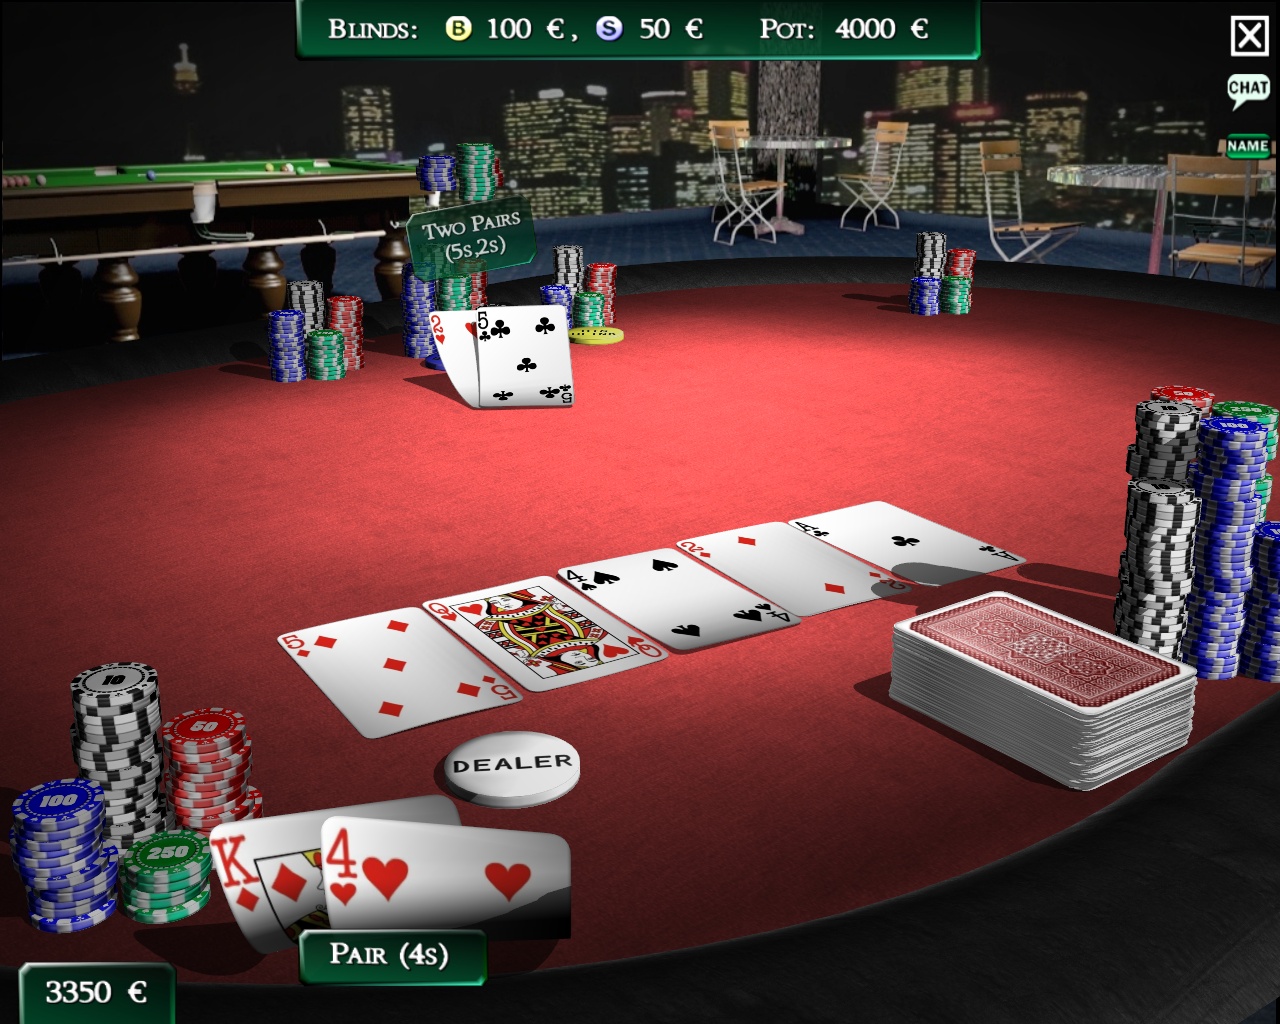 Sondaggio poker on line il 70% dei players è del Sud